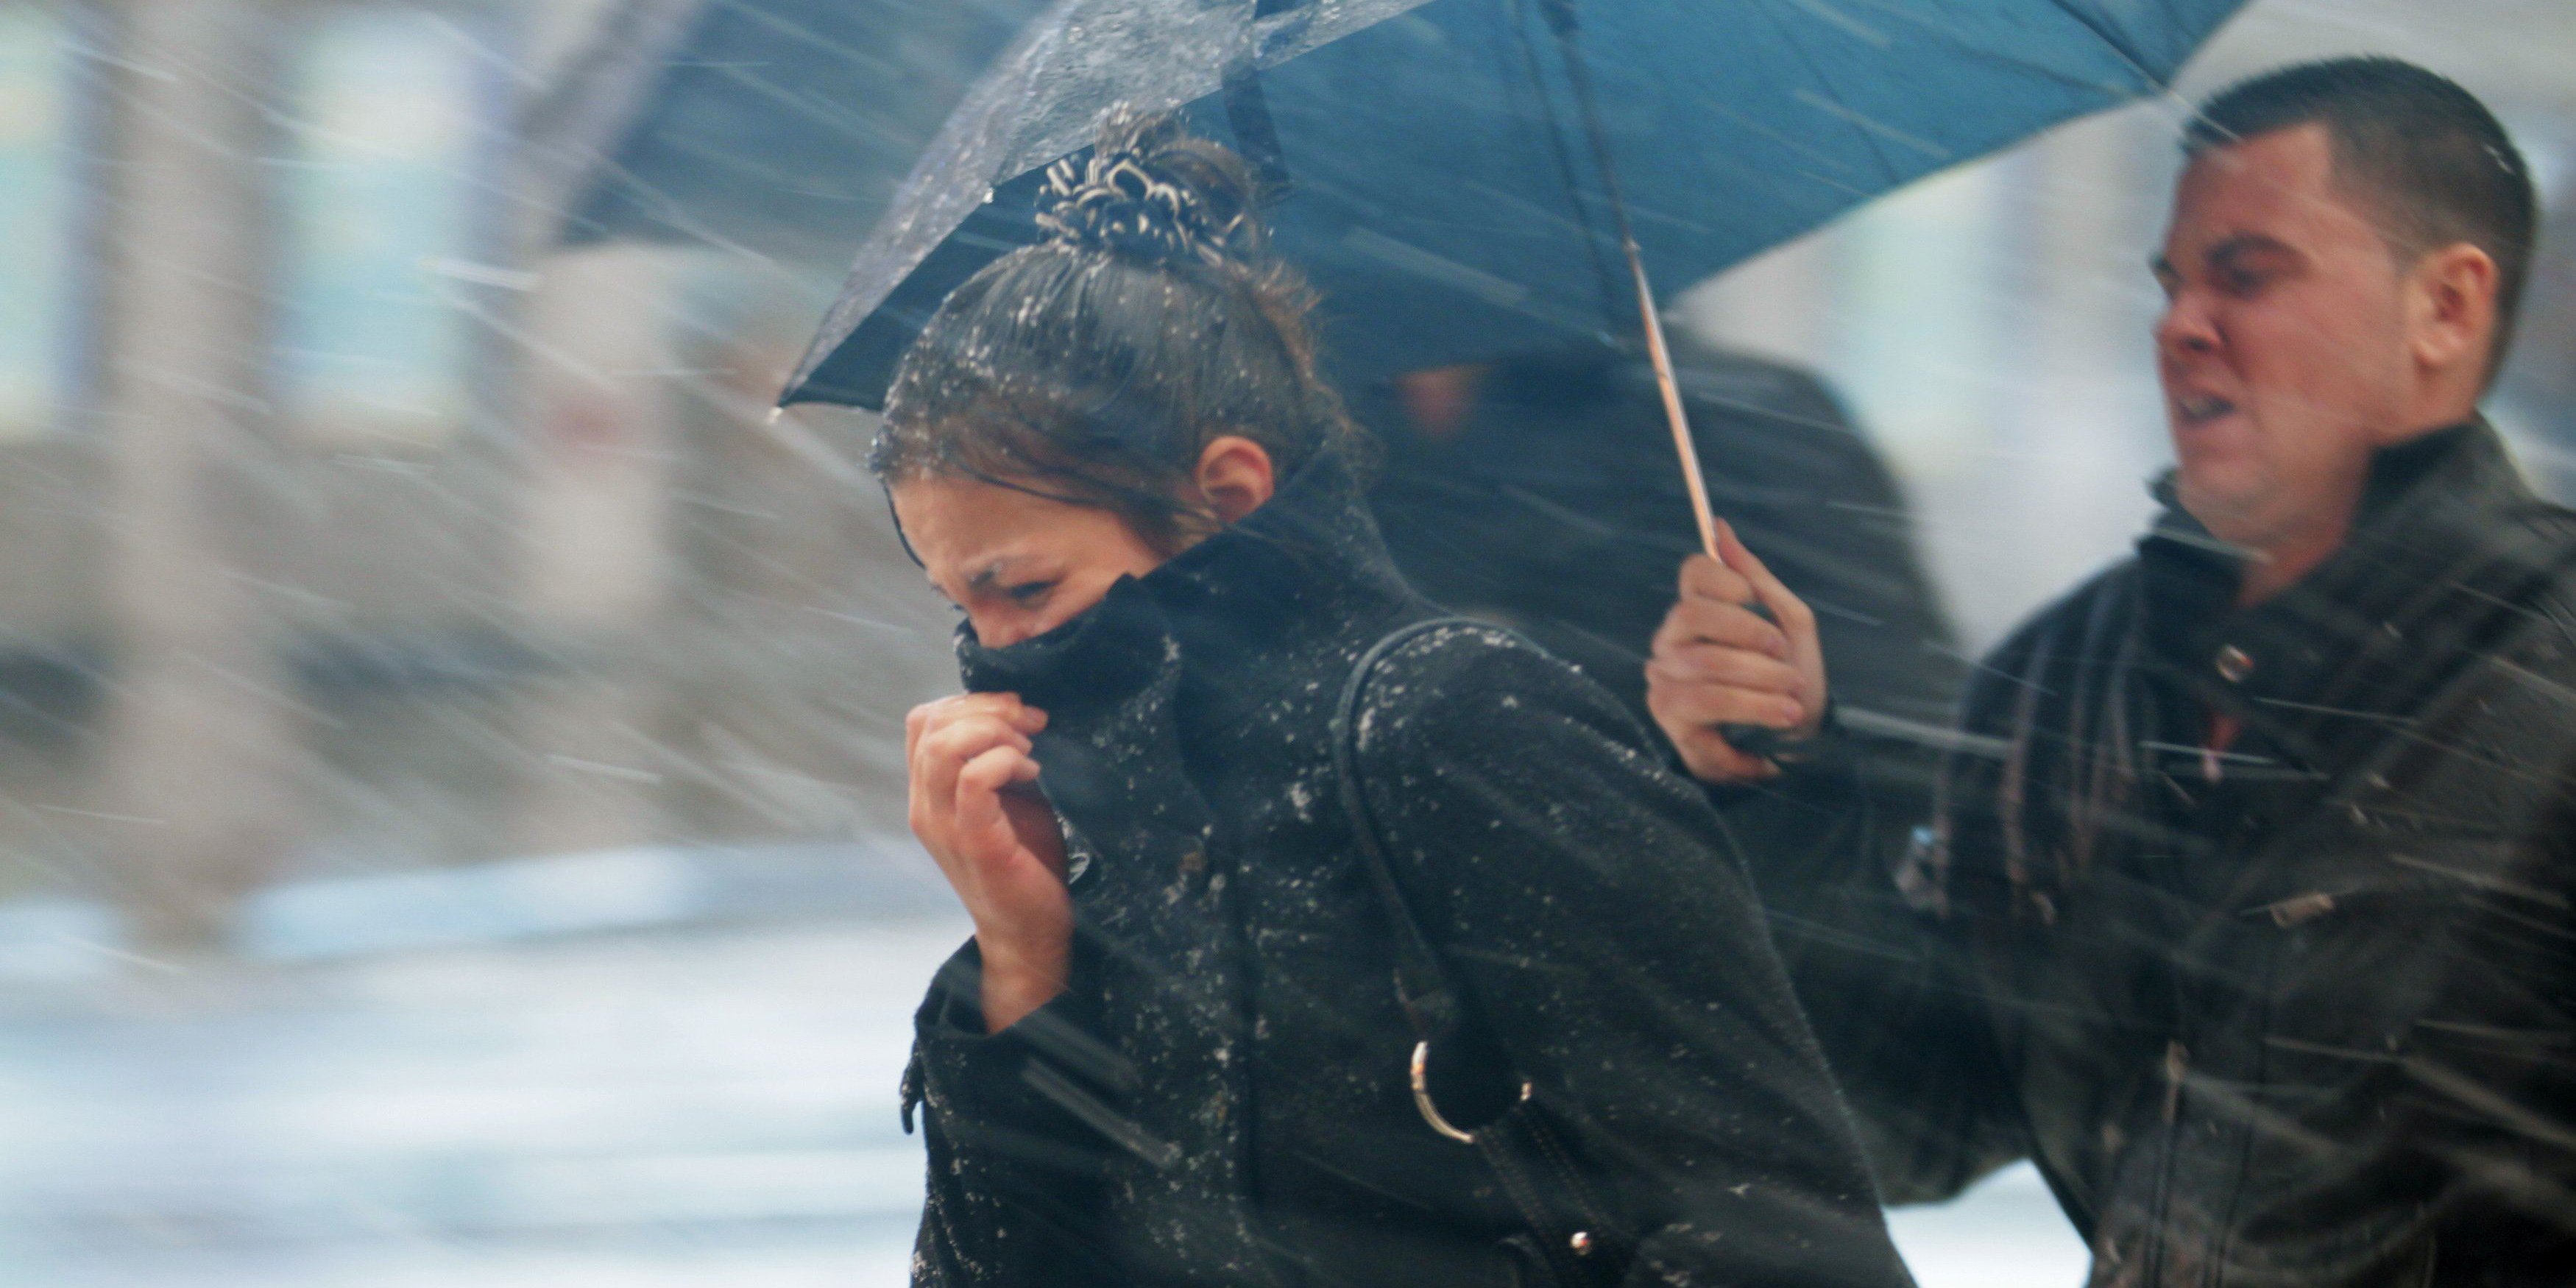 Сильный снег, метель, порывистый ветер — погода в Могилеве на выходные